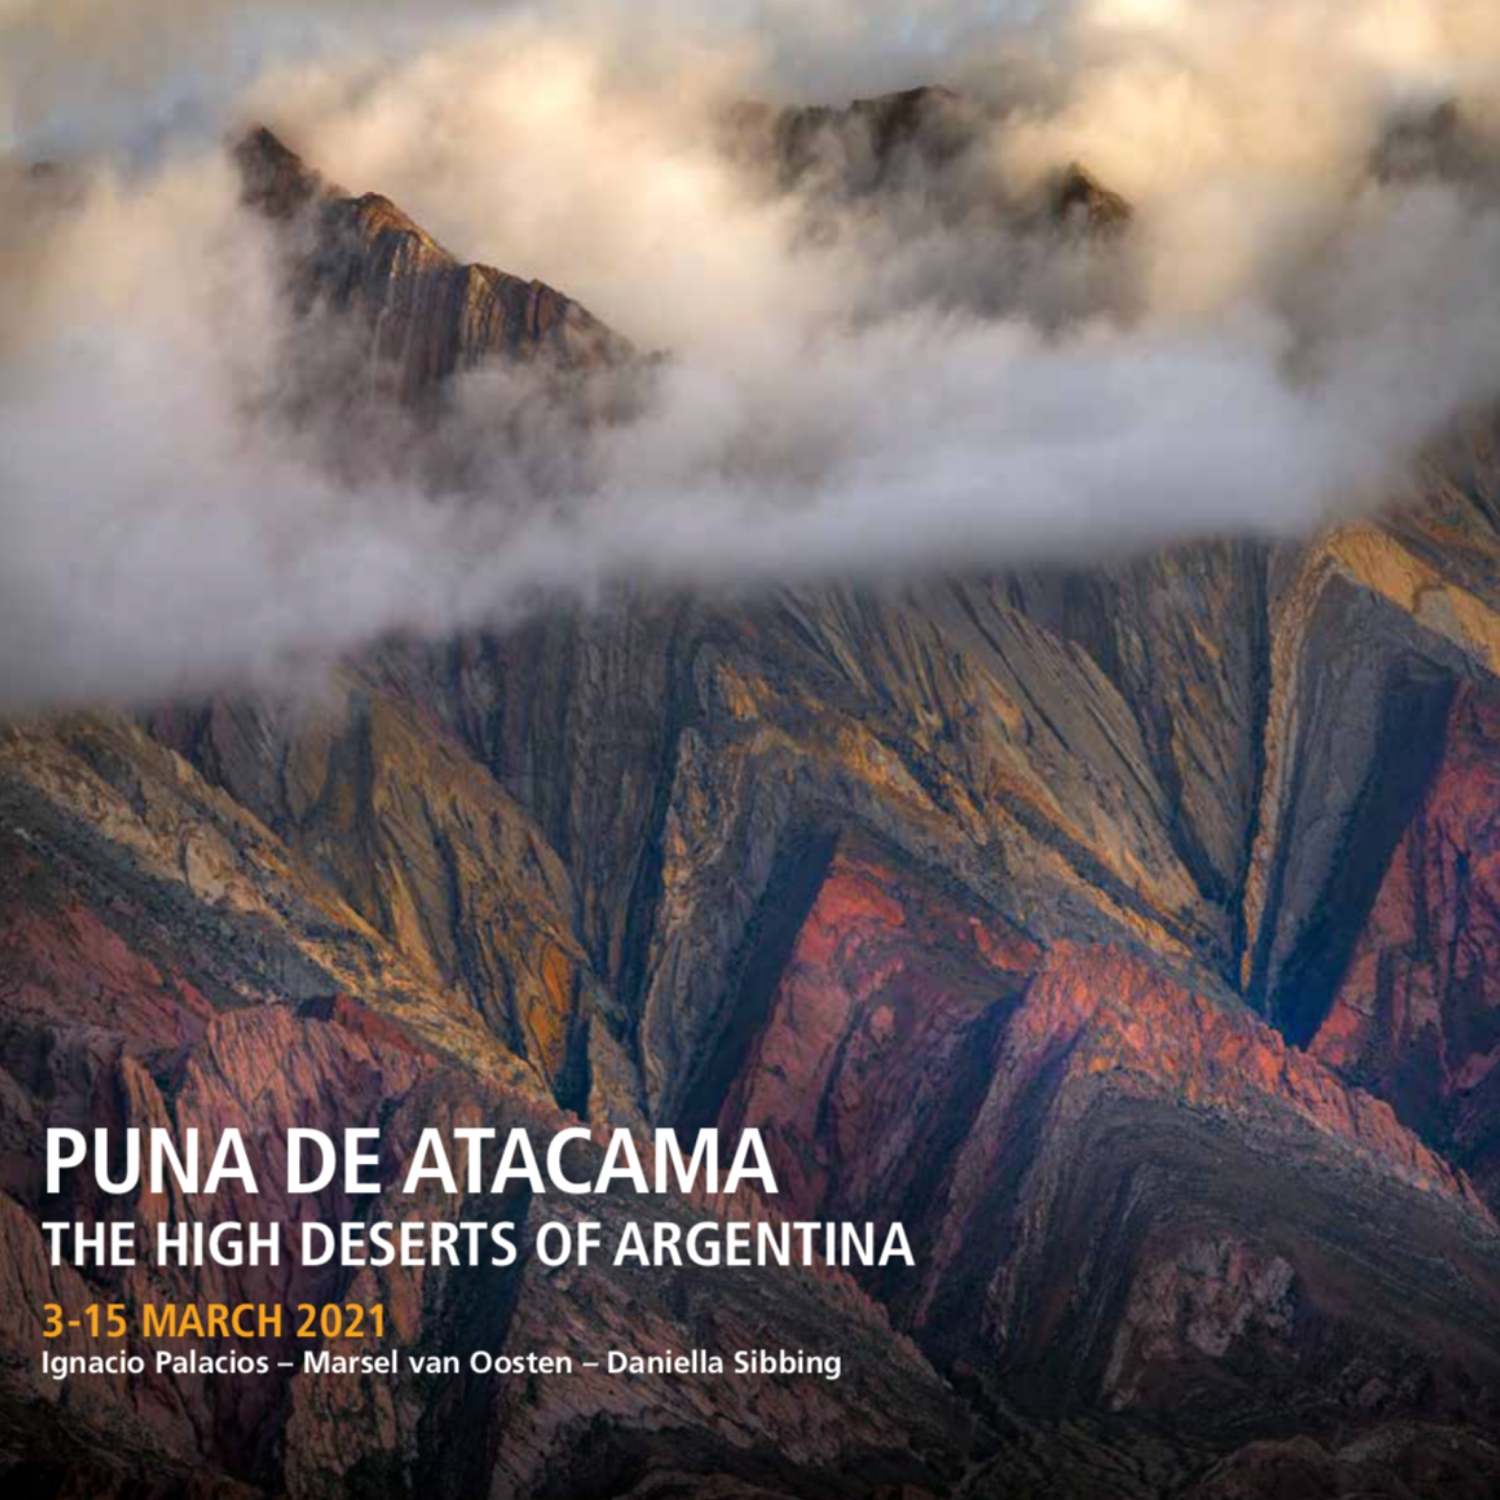 Puna De Atacama Photography Tour Ignacio Palacios and Marsel Van Oosten